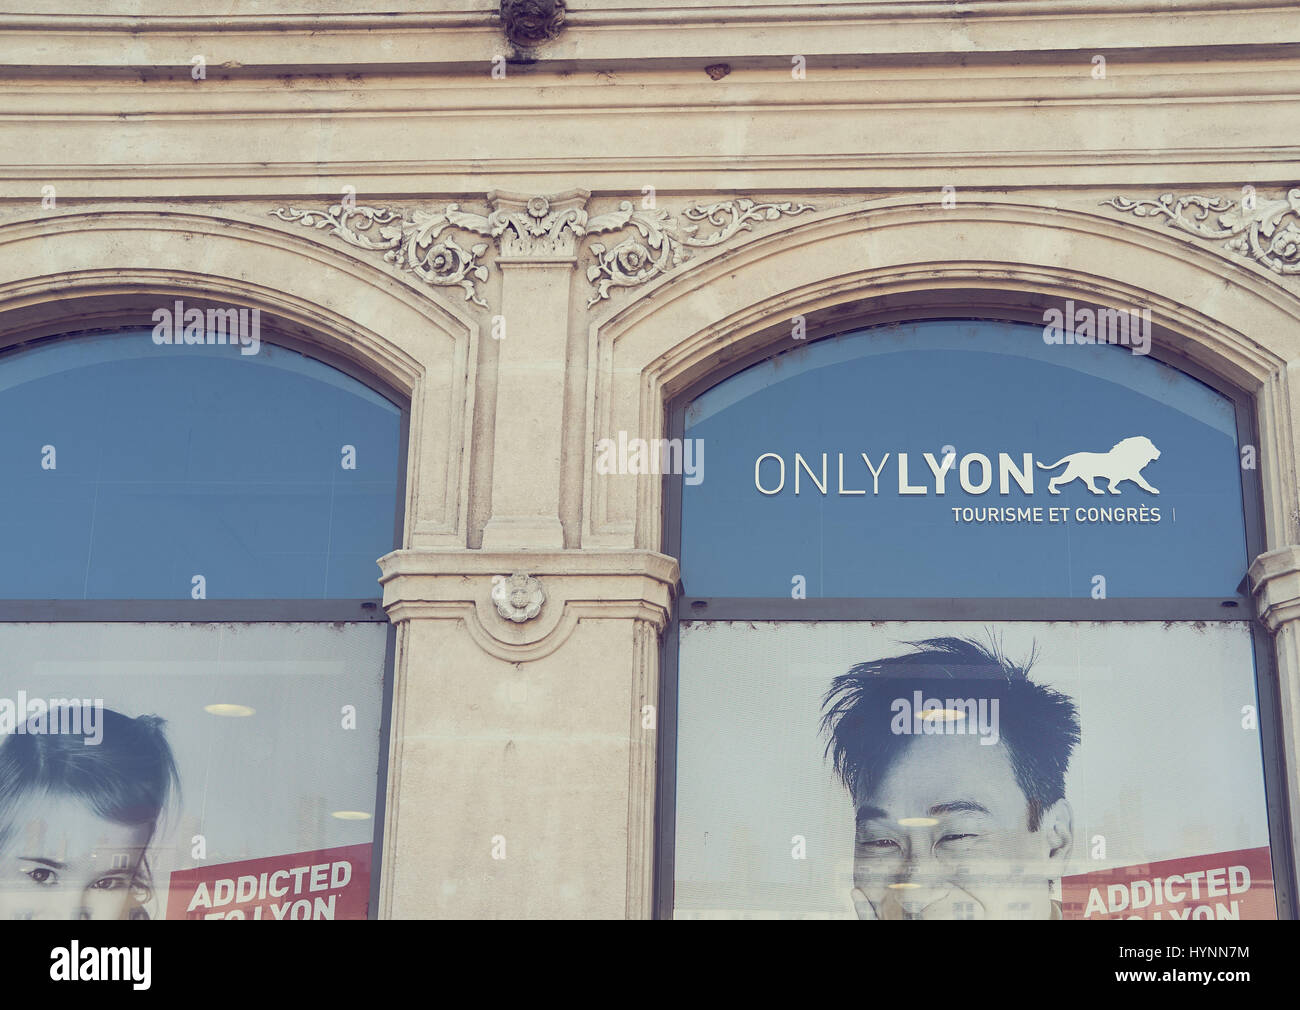 Heureux les individus de ou avec une forte connexion à Lyon en campagne de publicité pour promouvoir la ville, Auvergne-Rhone-Alpes, France, Europe Banque D'Images